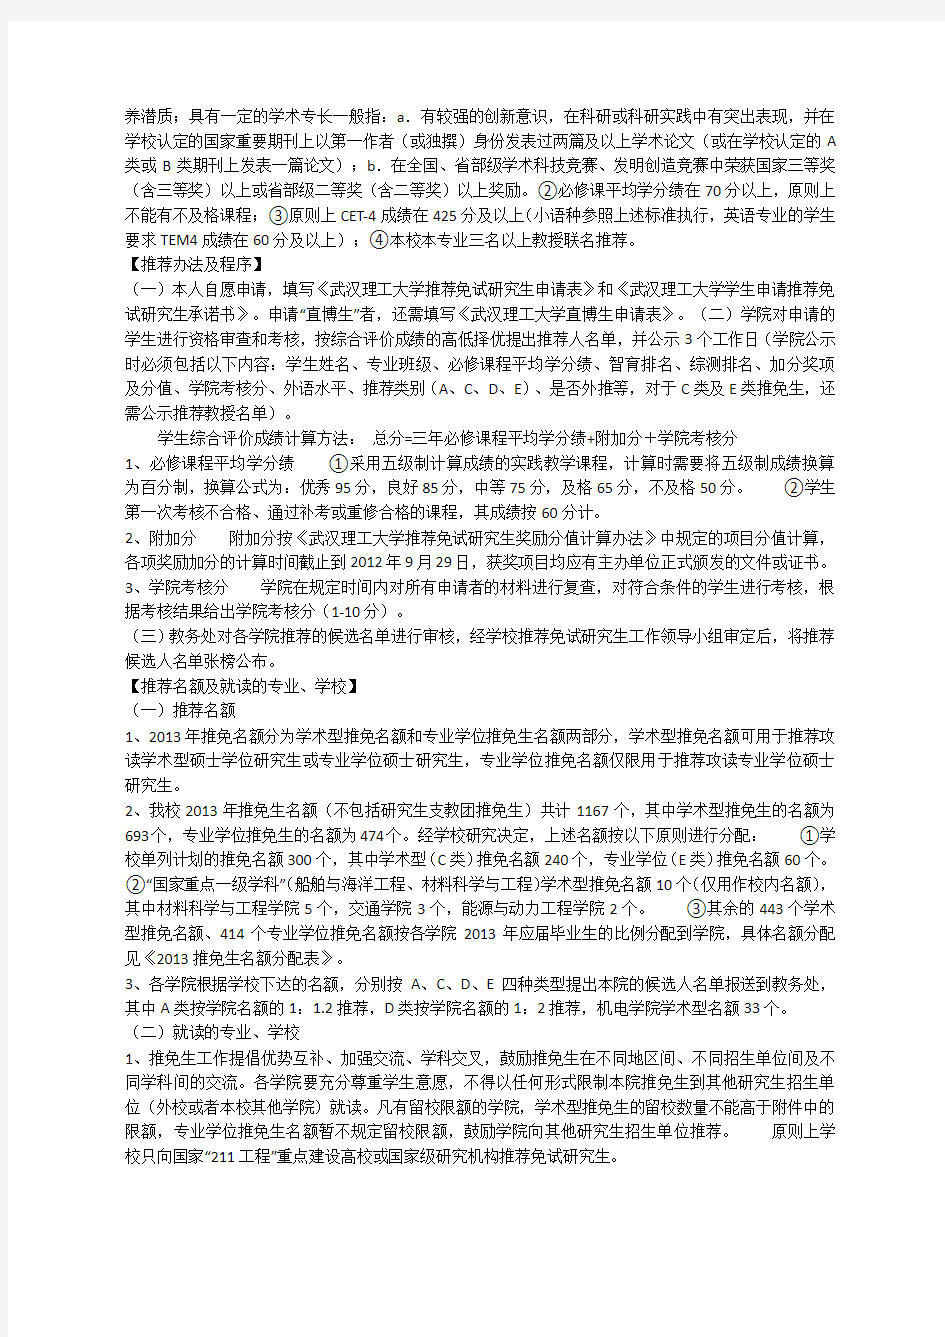 武汉理工大学推荐免试研究生条例及加分办法